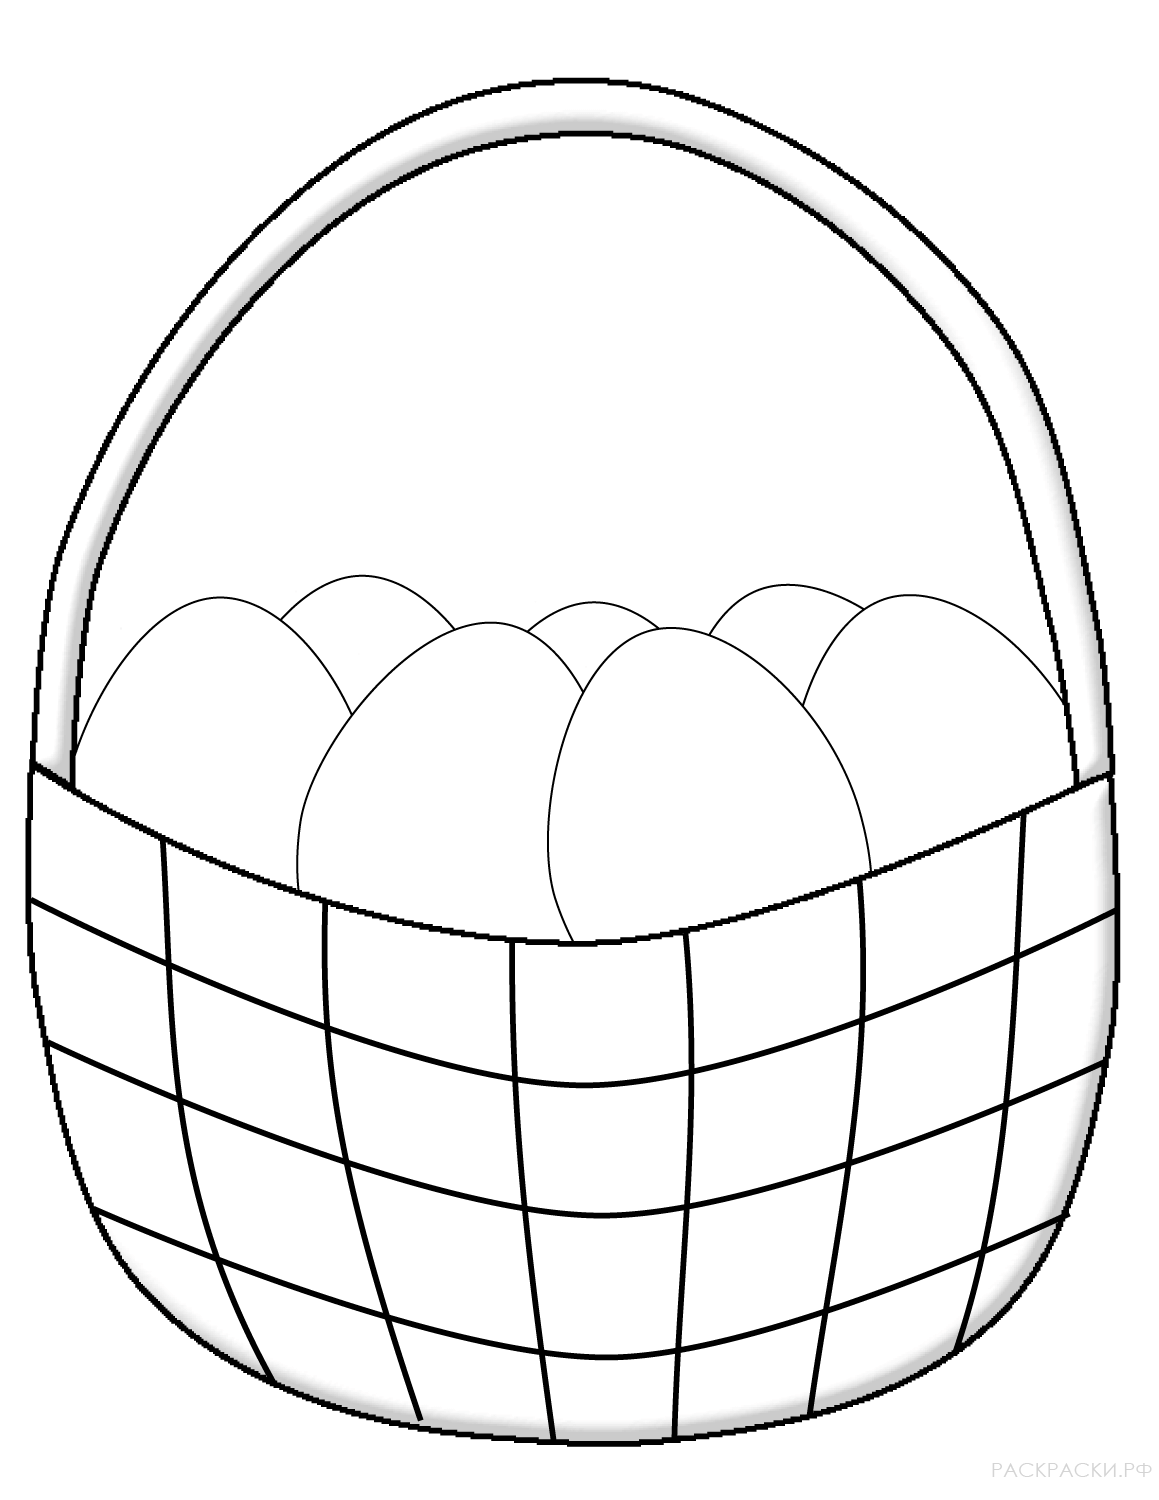 Раскраска Пасхальная корзинка с яйцами